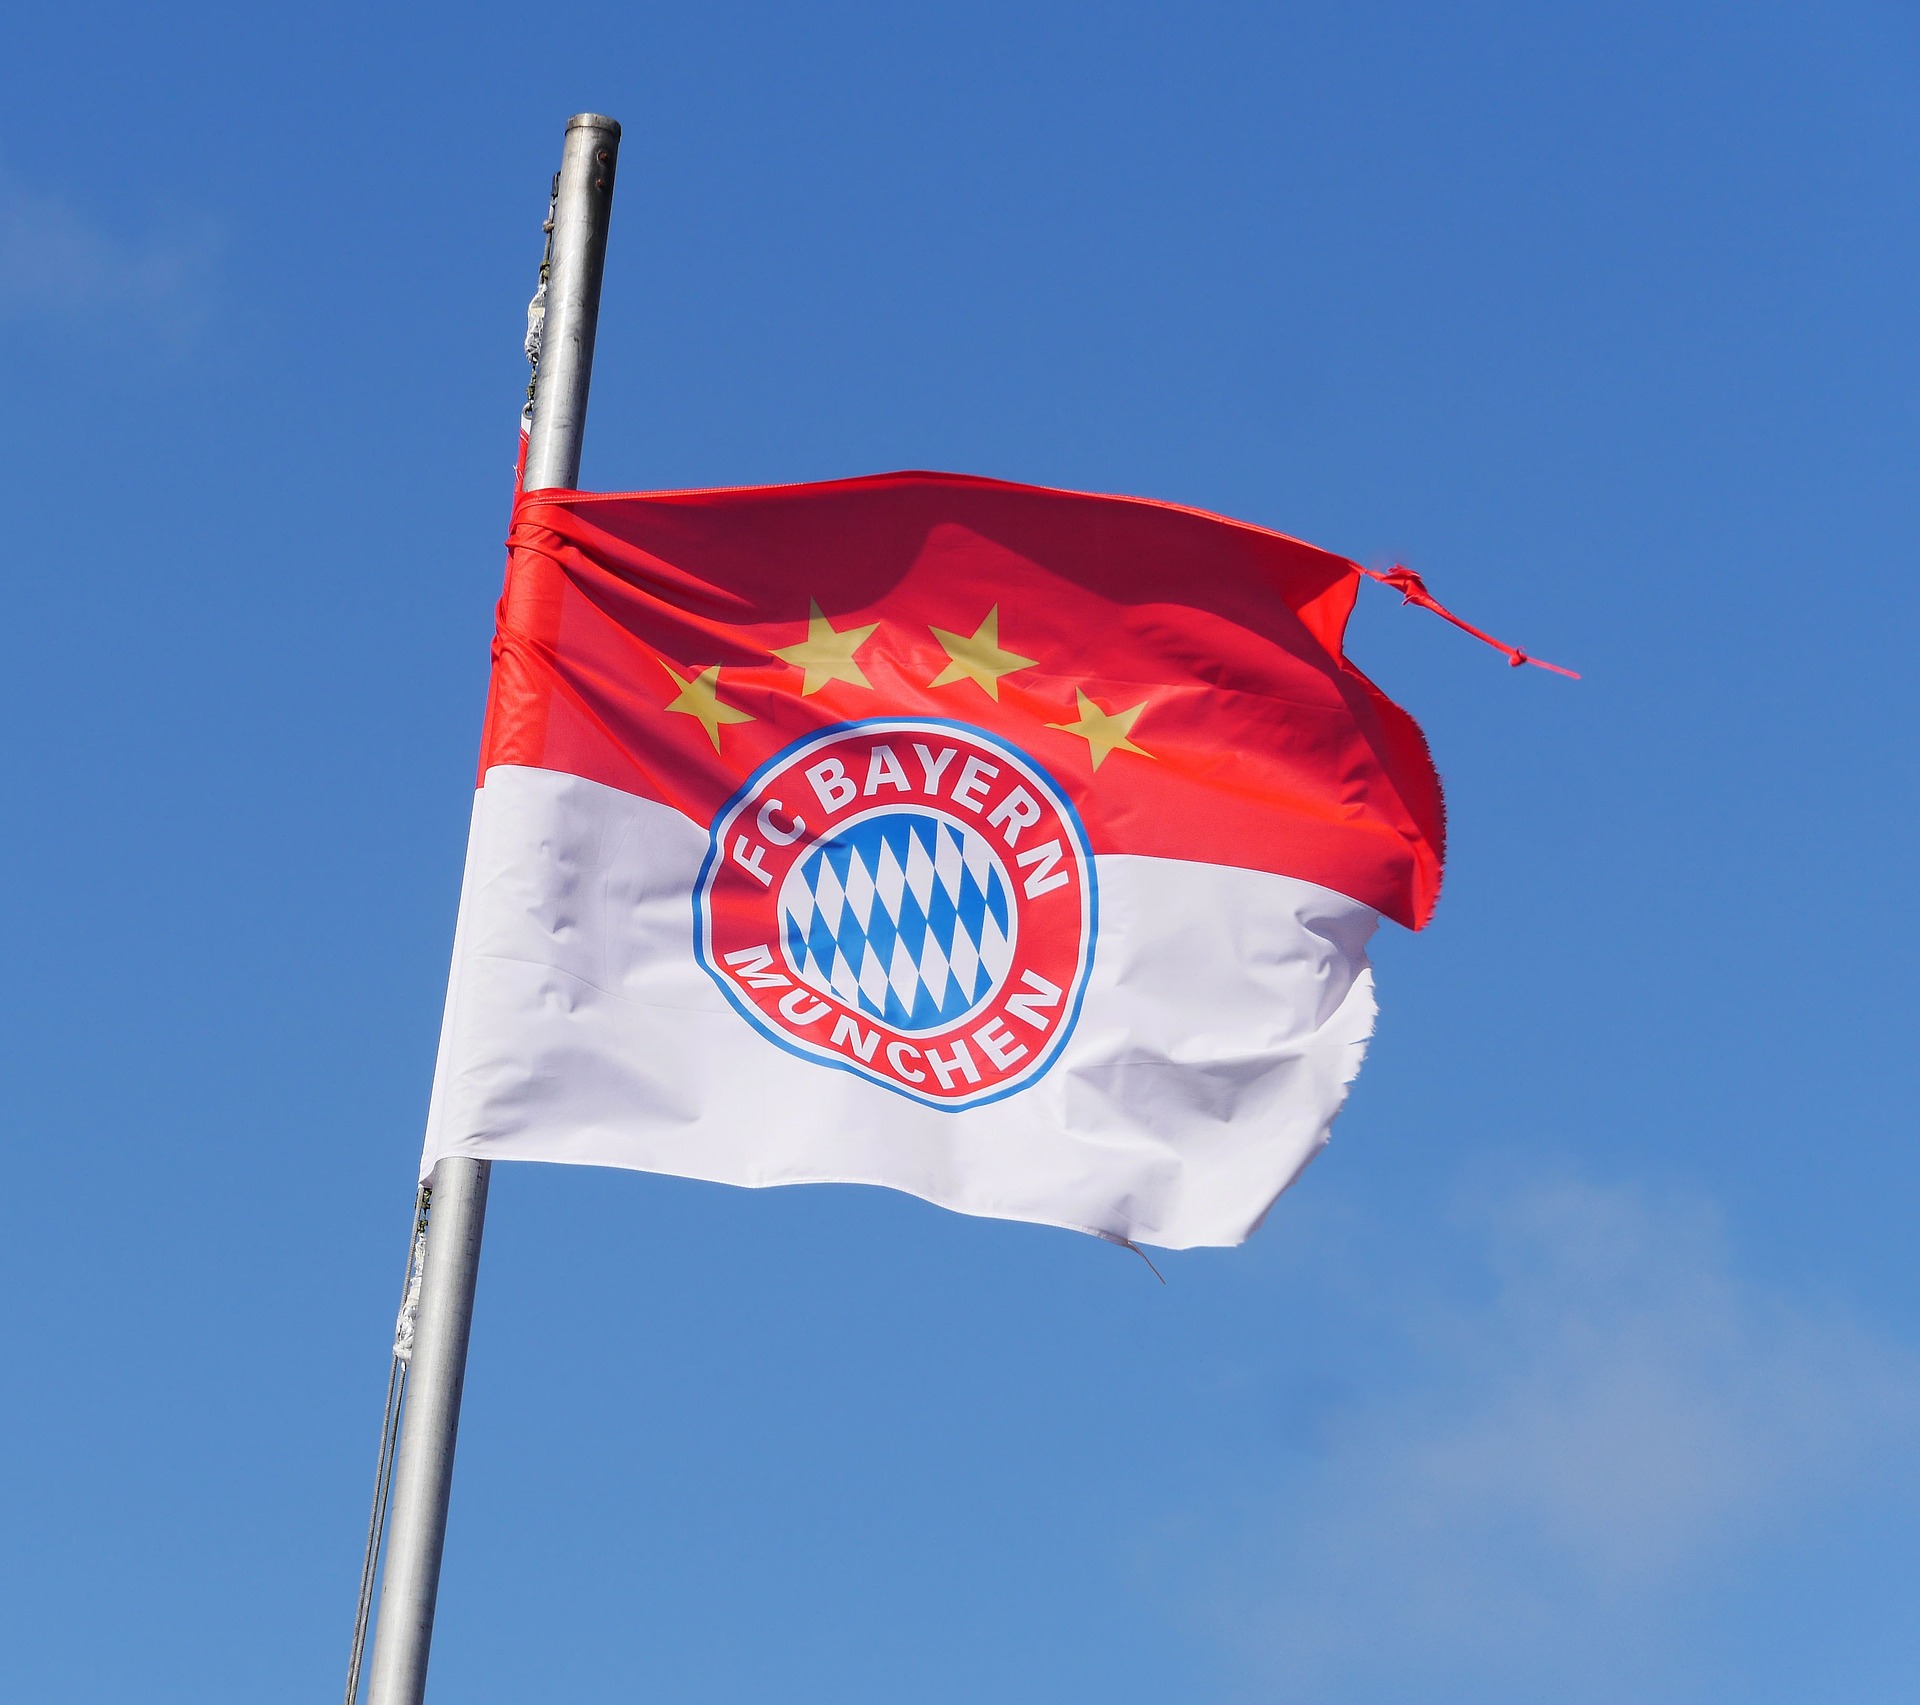 Fc bayern munich flag with team shield